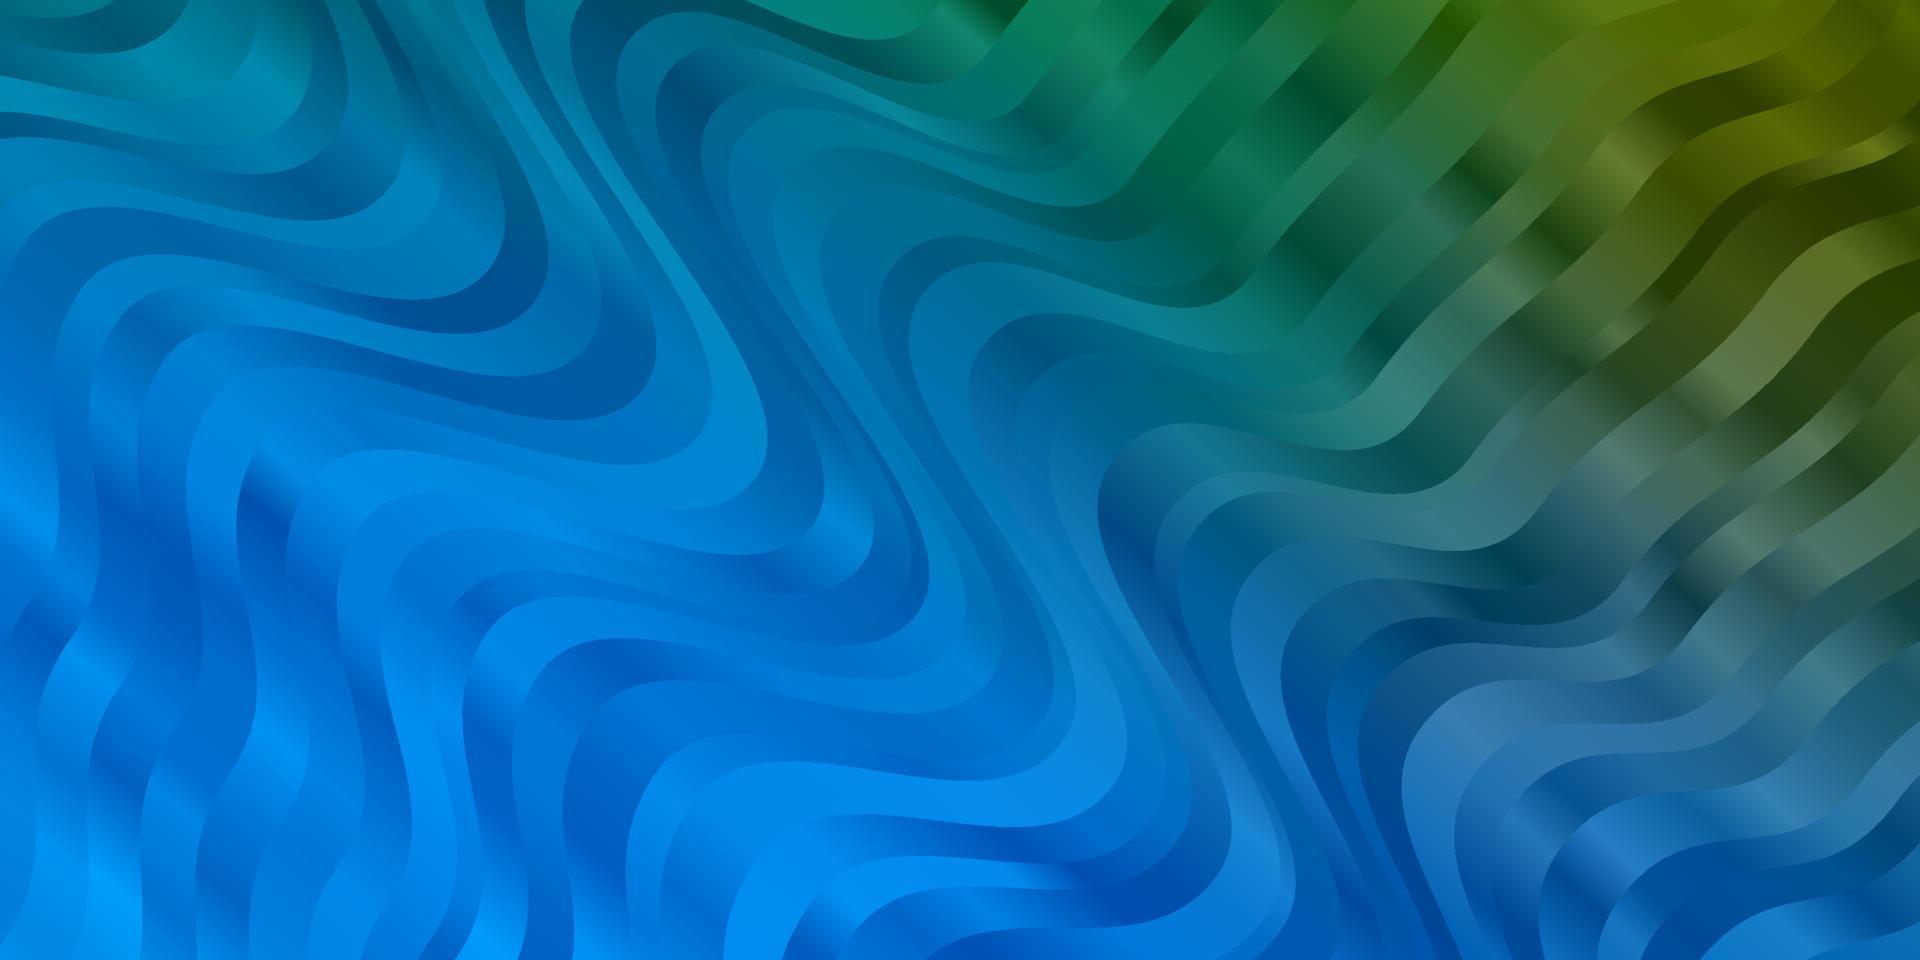 hellblaues, grünes Vektormuster mit Linien. vektor